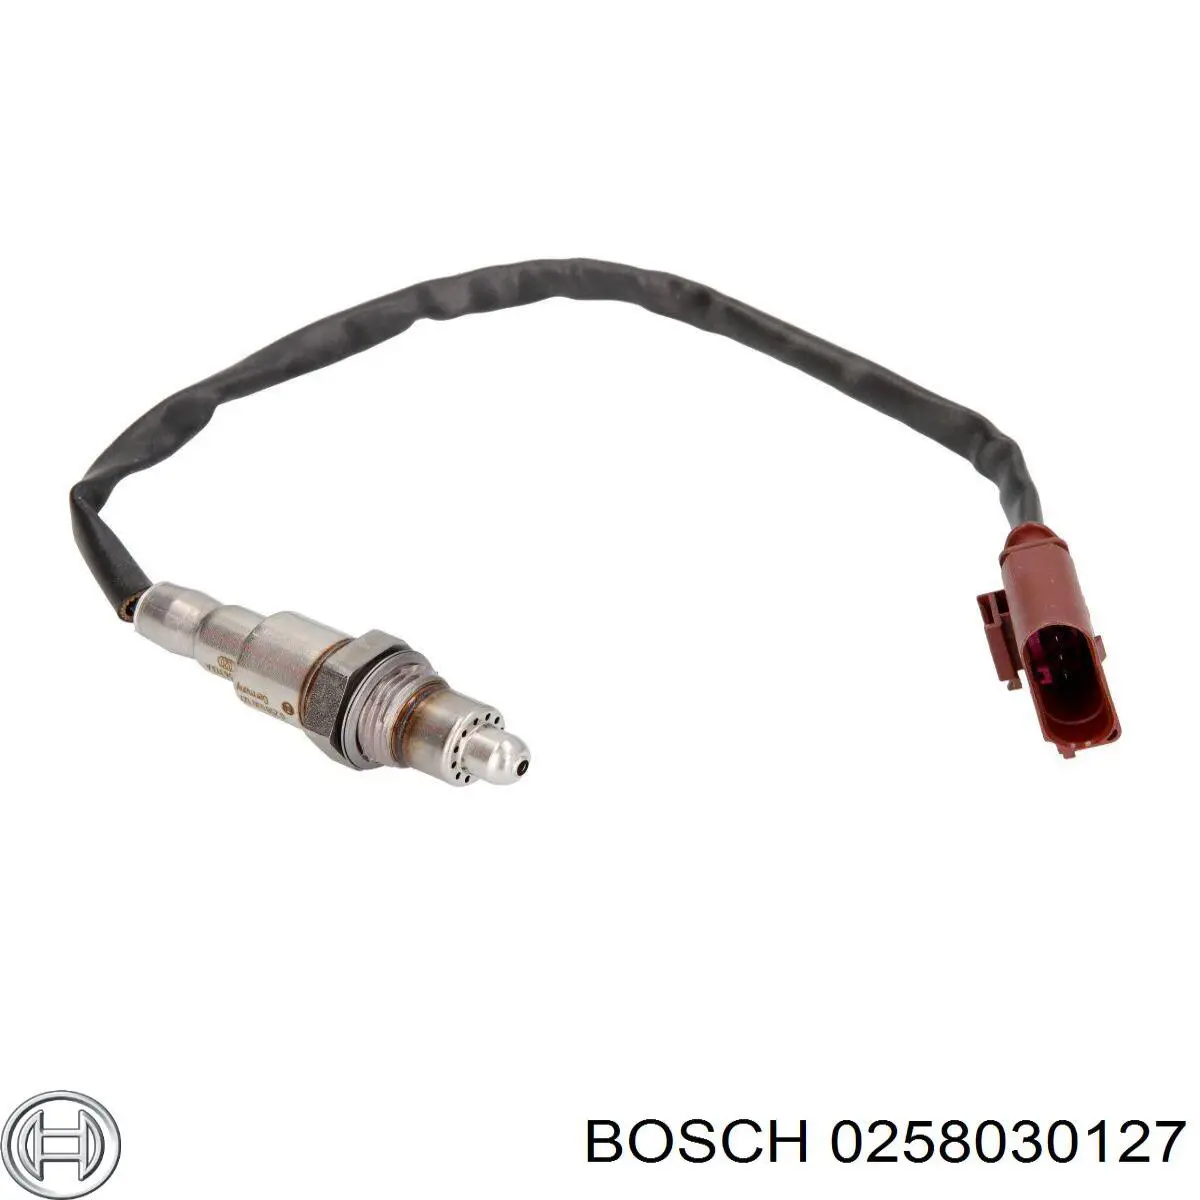 0258030127 Bosch sonda lambda, sensor de oxigênio até o catalisador